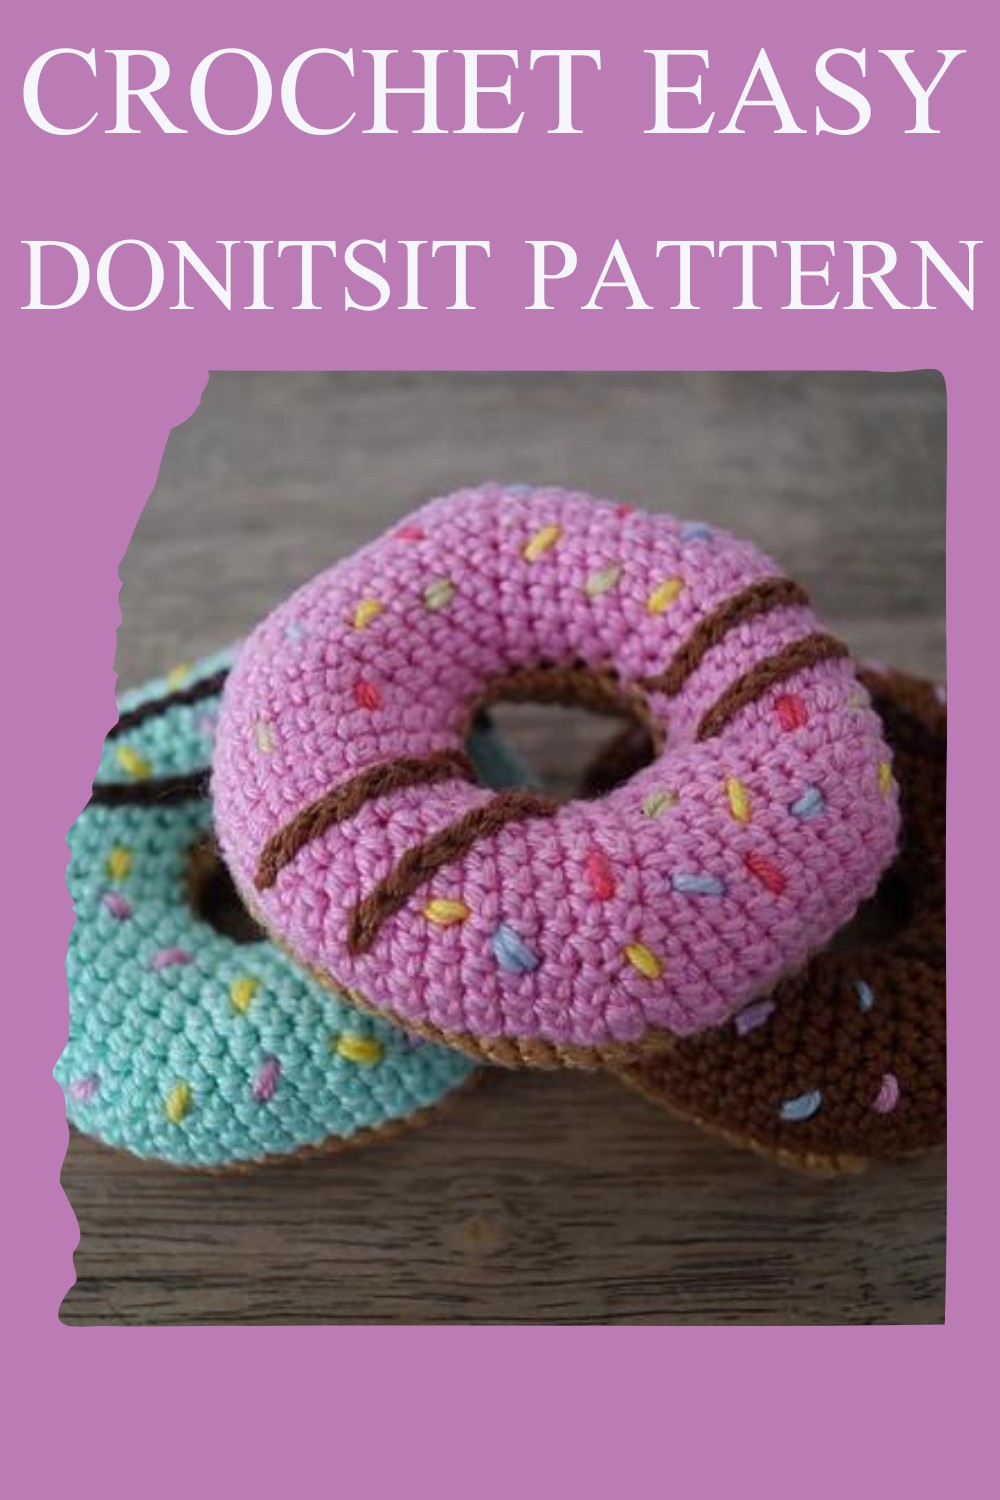 Crochet Easy Donitsit Pattern 